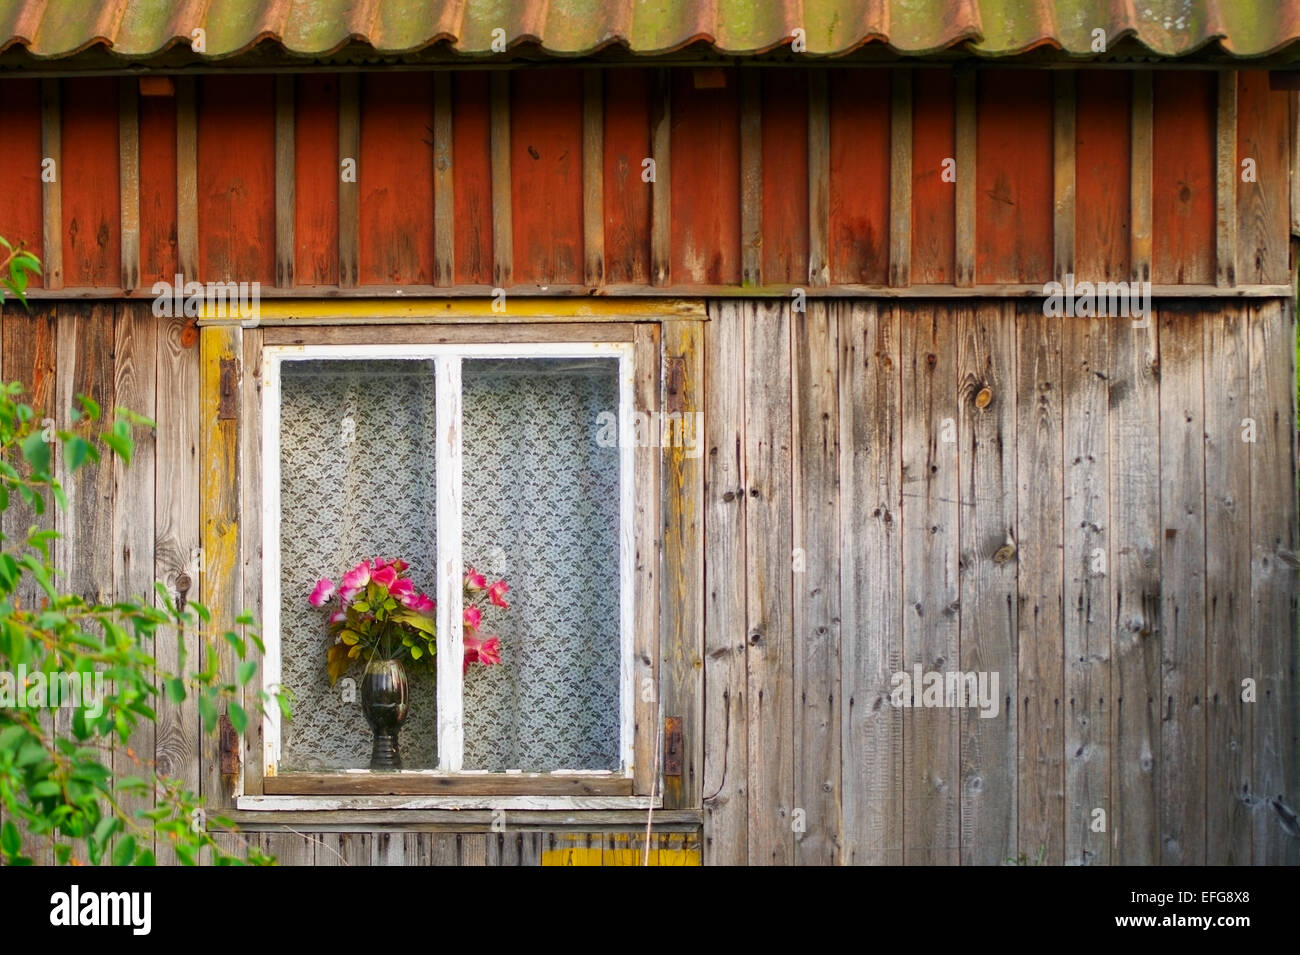 Fenêtre d'un vieux chalet en bois avec des roses rouges dans un vase. Occidentale, dans le nord de la Pologne. Banque D'Images